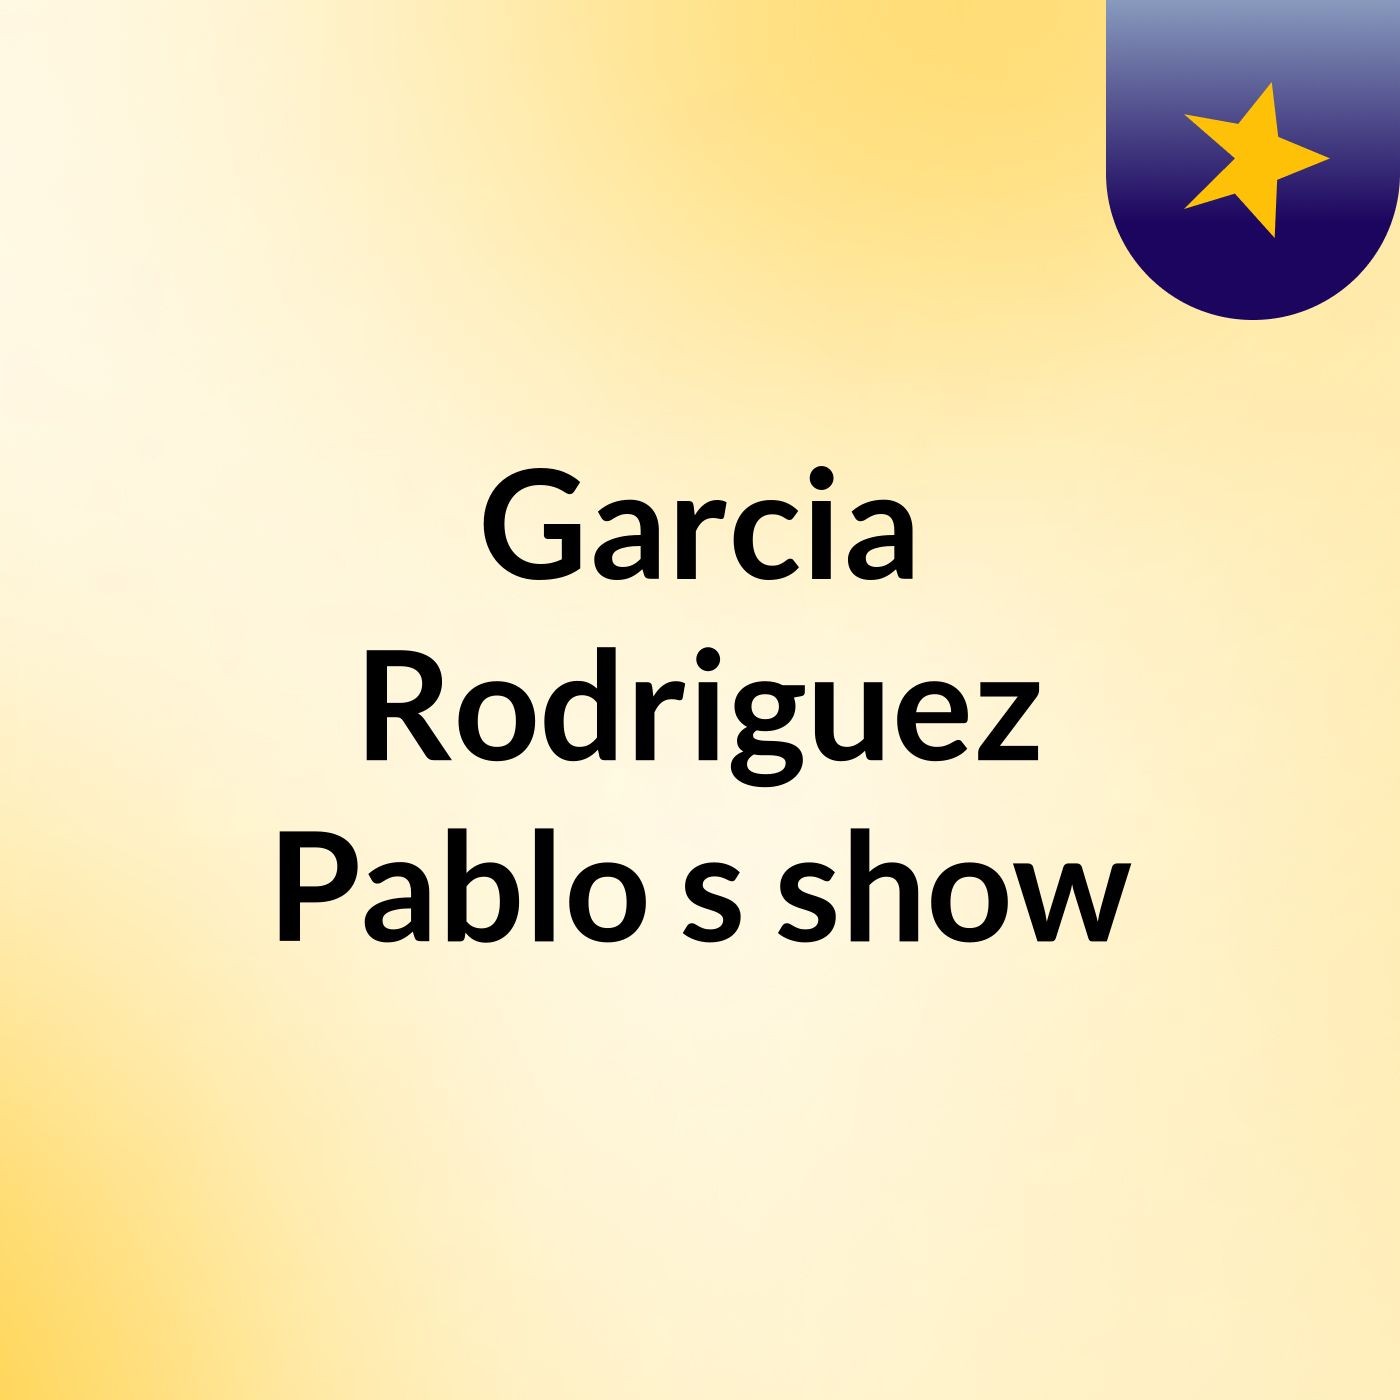 Garcia Rodriguez Pablo's show